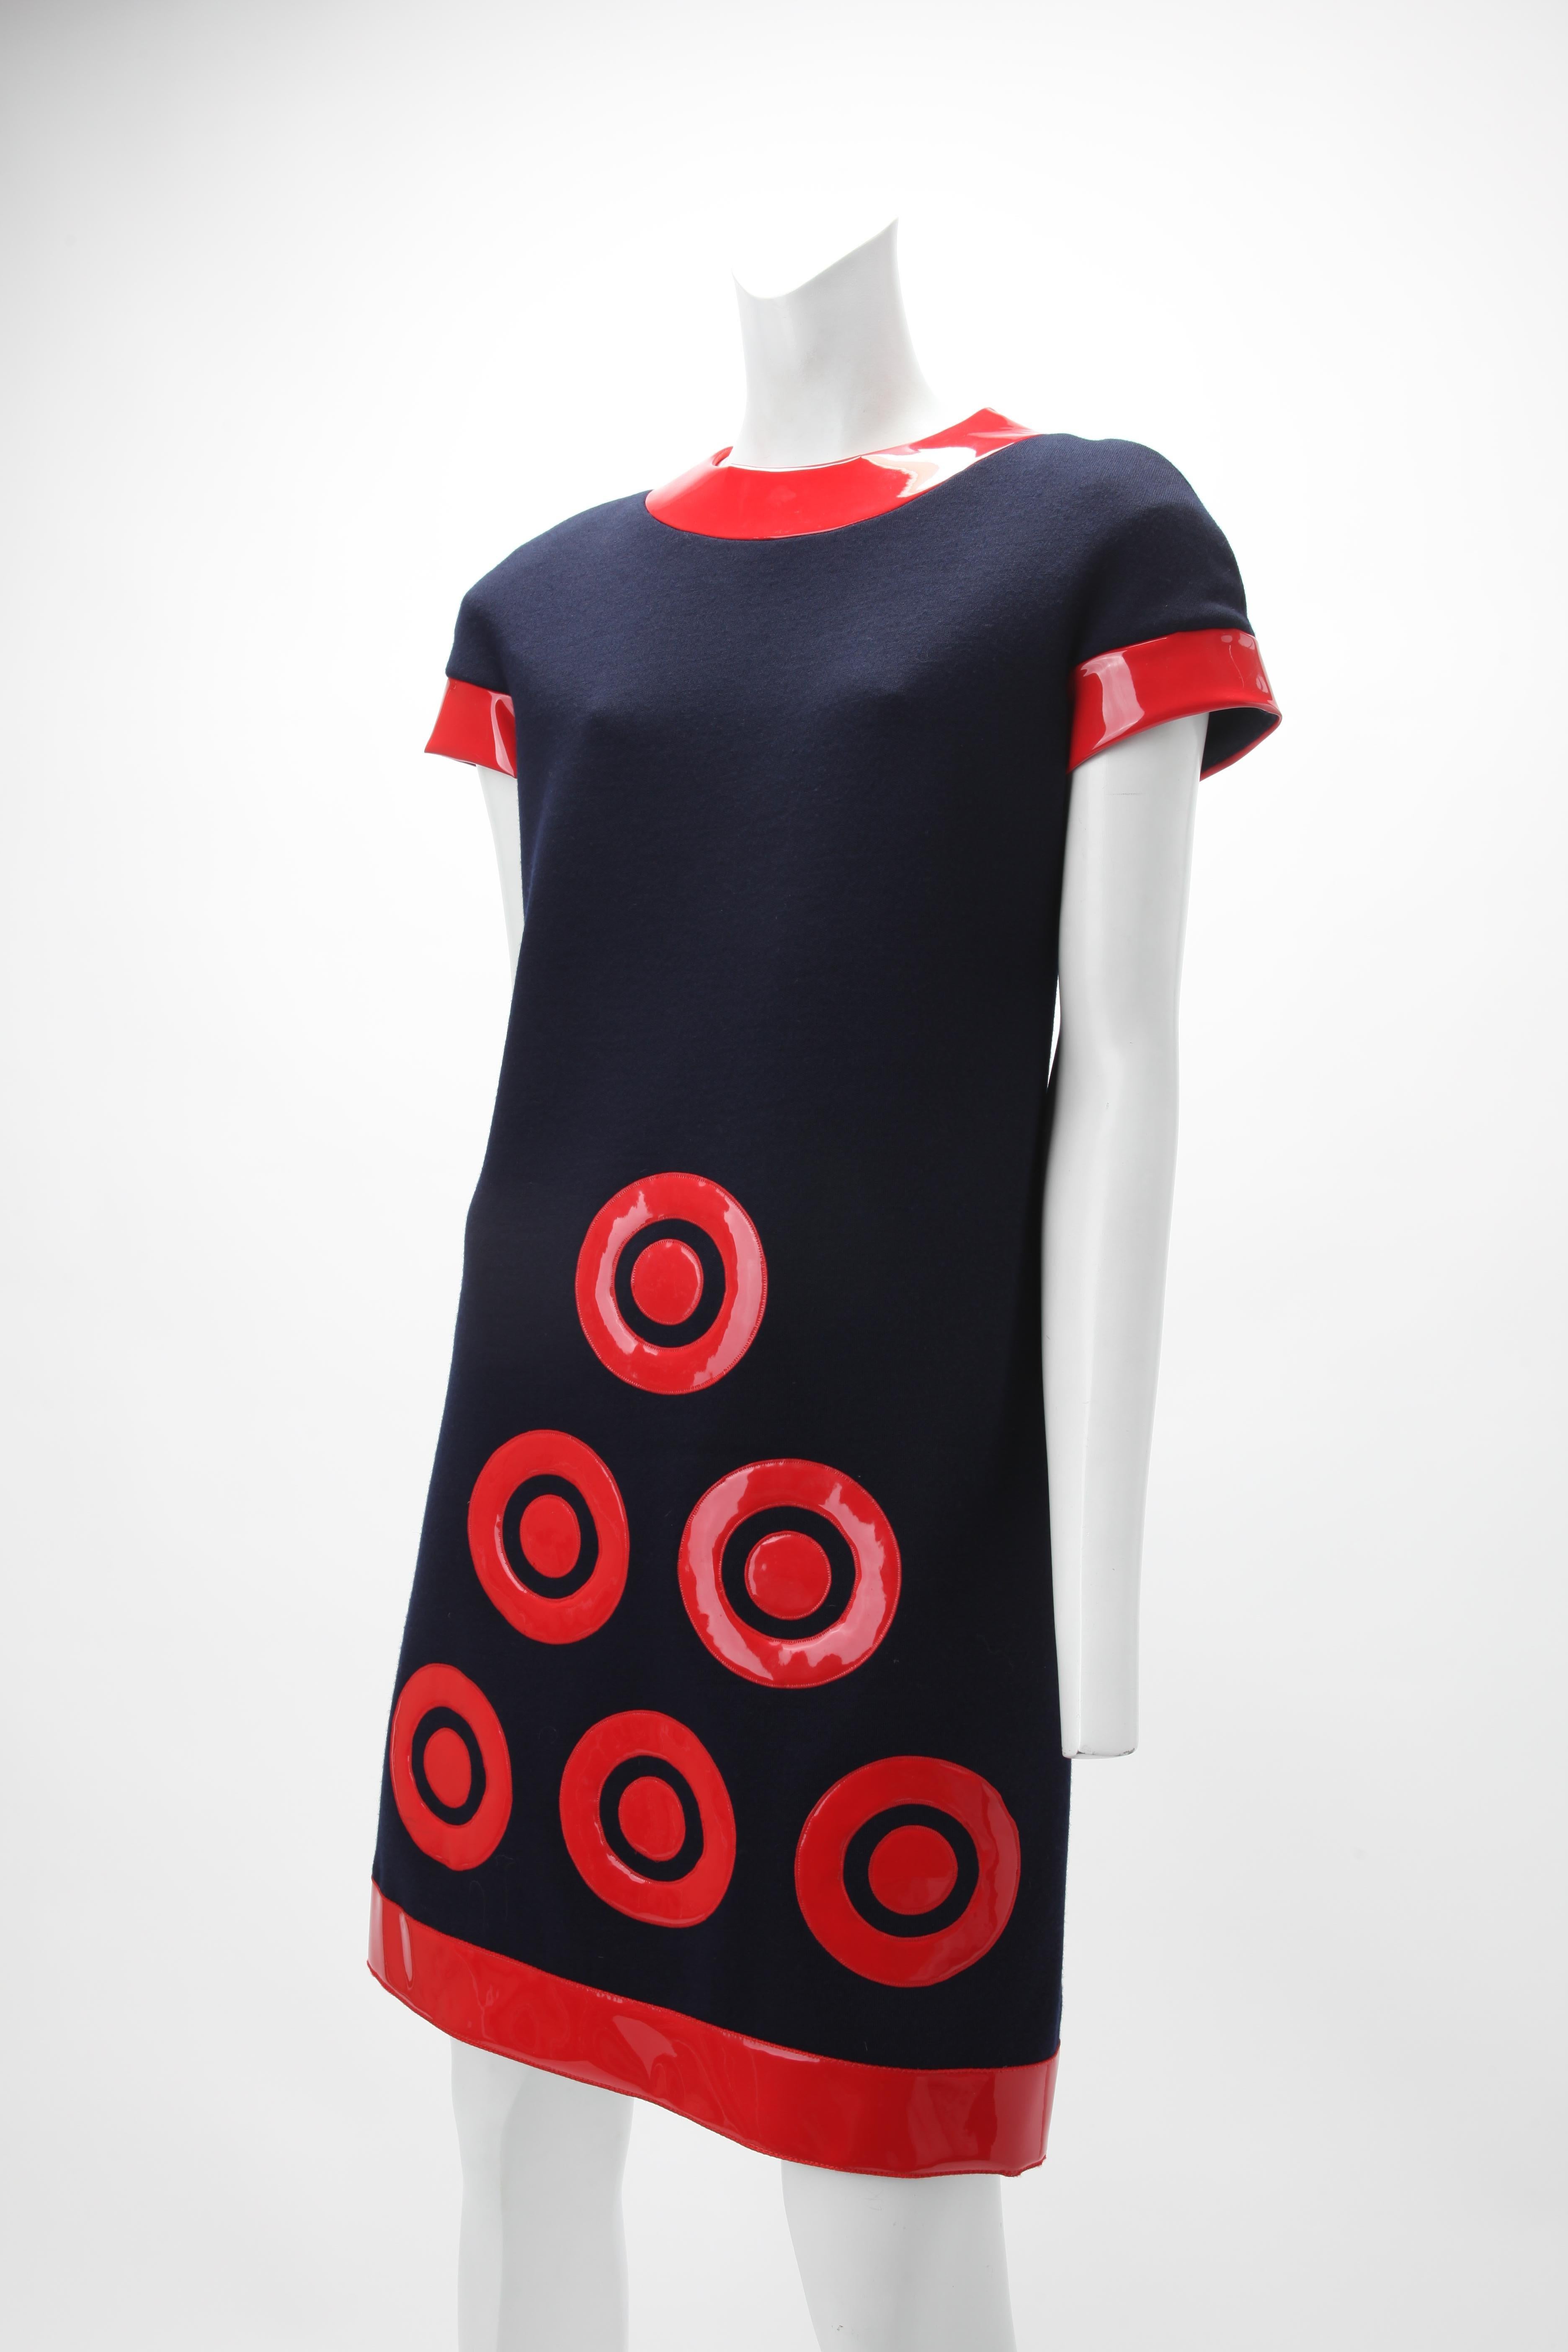 c. 1967 Pierre Cardin Futuristisches Kleid
Minikleid aus marineblauem Wolljersey. Das schlauchförmige Minikleid hat einen Rundhalsausschnitt und kurze Ärmel. Roter, glänzender Vinylbesatz an Halsausschnitt, Ärmelsaum, unterem Saum und in Form von